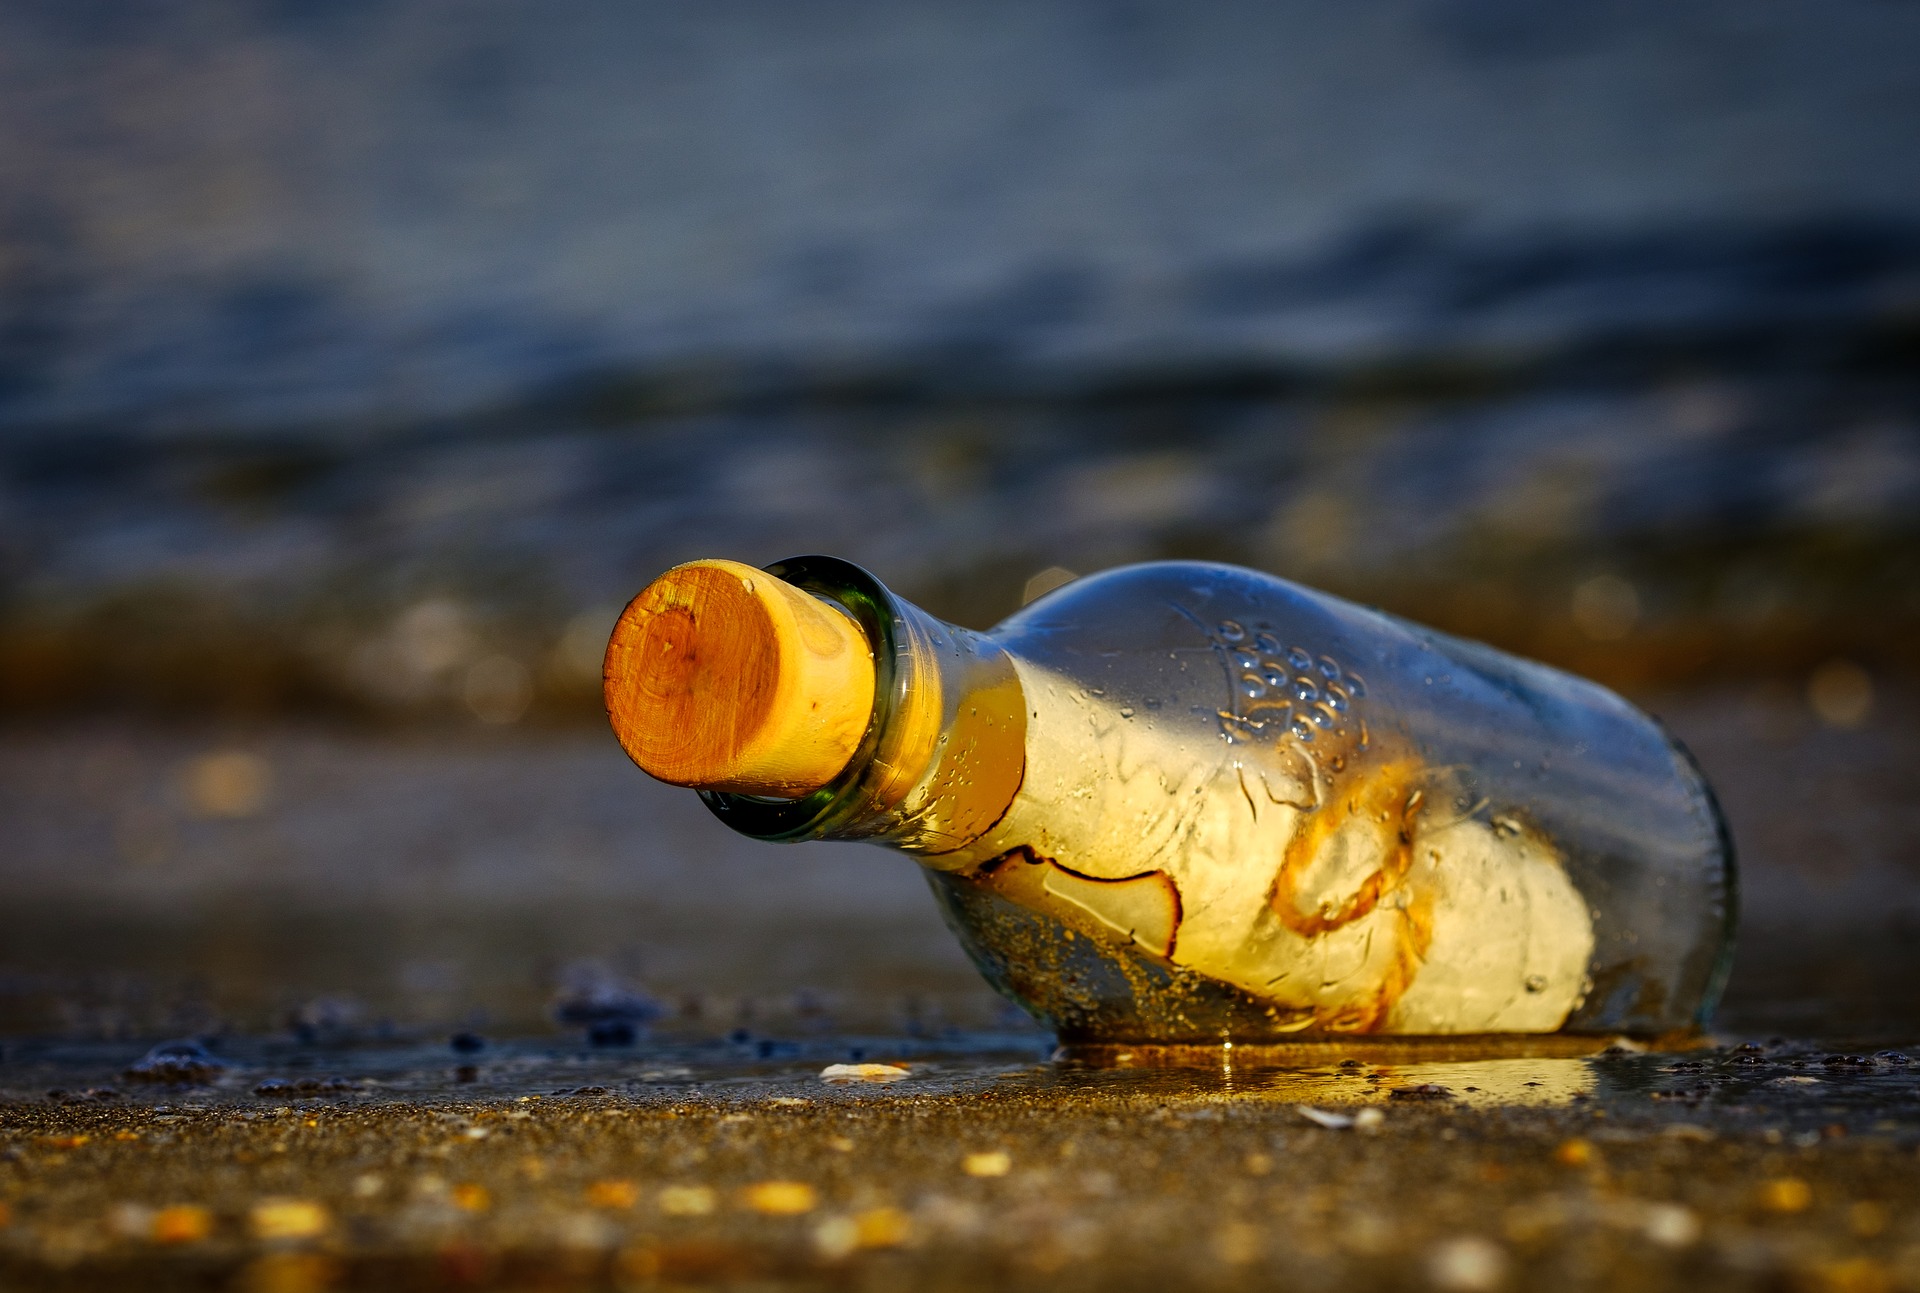 Βρέθηκε το παλαιότερο μήνυμα σε μπουκάλι στον κόσμο – Είχε πεταχτεί στη θάλασσα το 1886